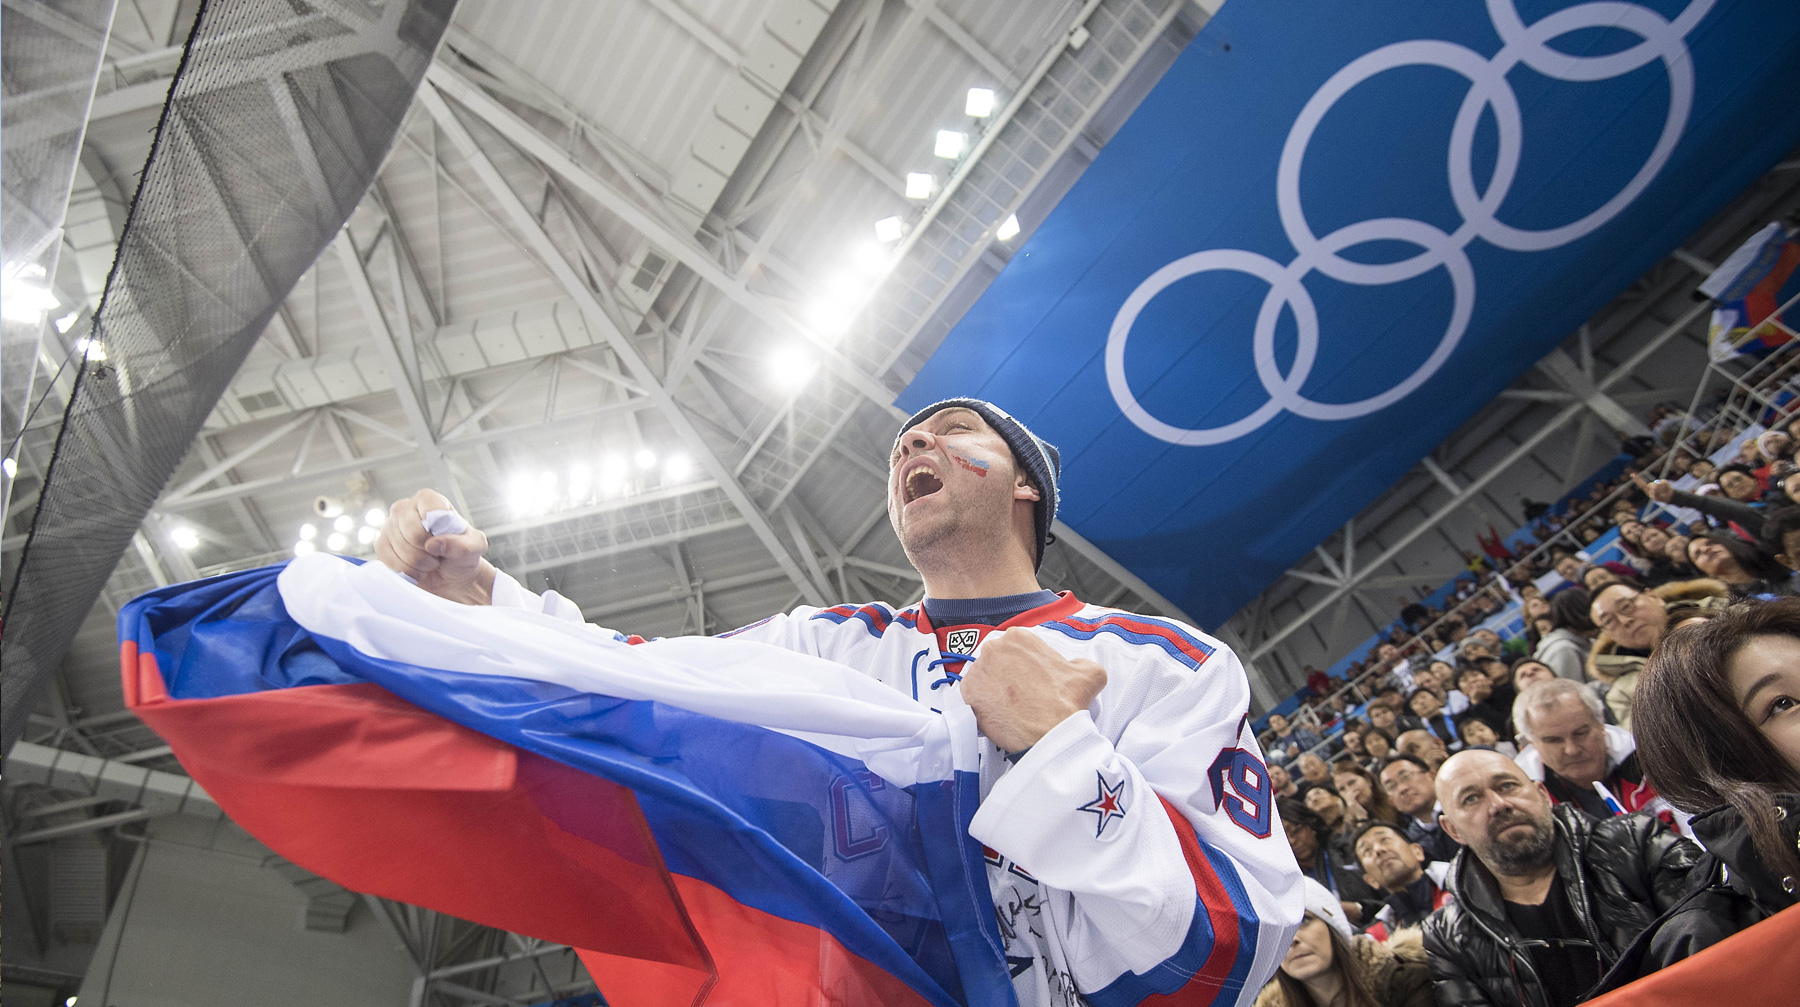 Кристоф Вишеманн заявил, что международная организация серьезно нарушила процессуальные права российских атлетов Болельщик с российским флагом. Зимние Олимпийские игры 2018, Южная Корея